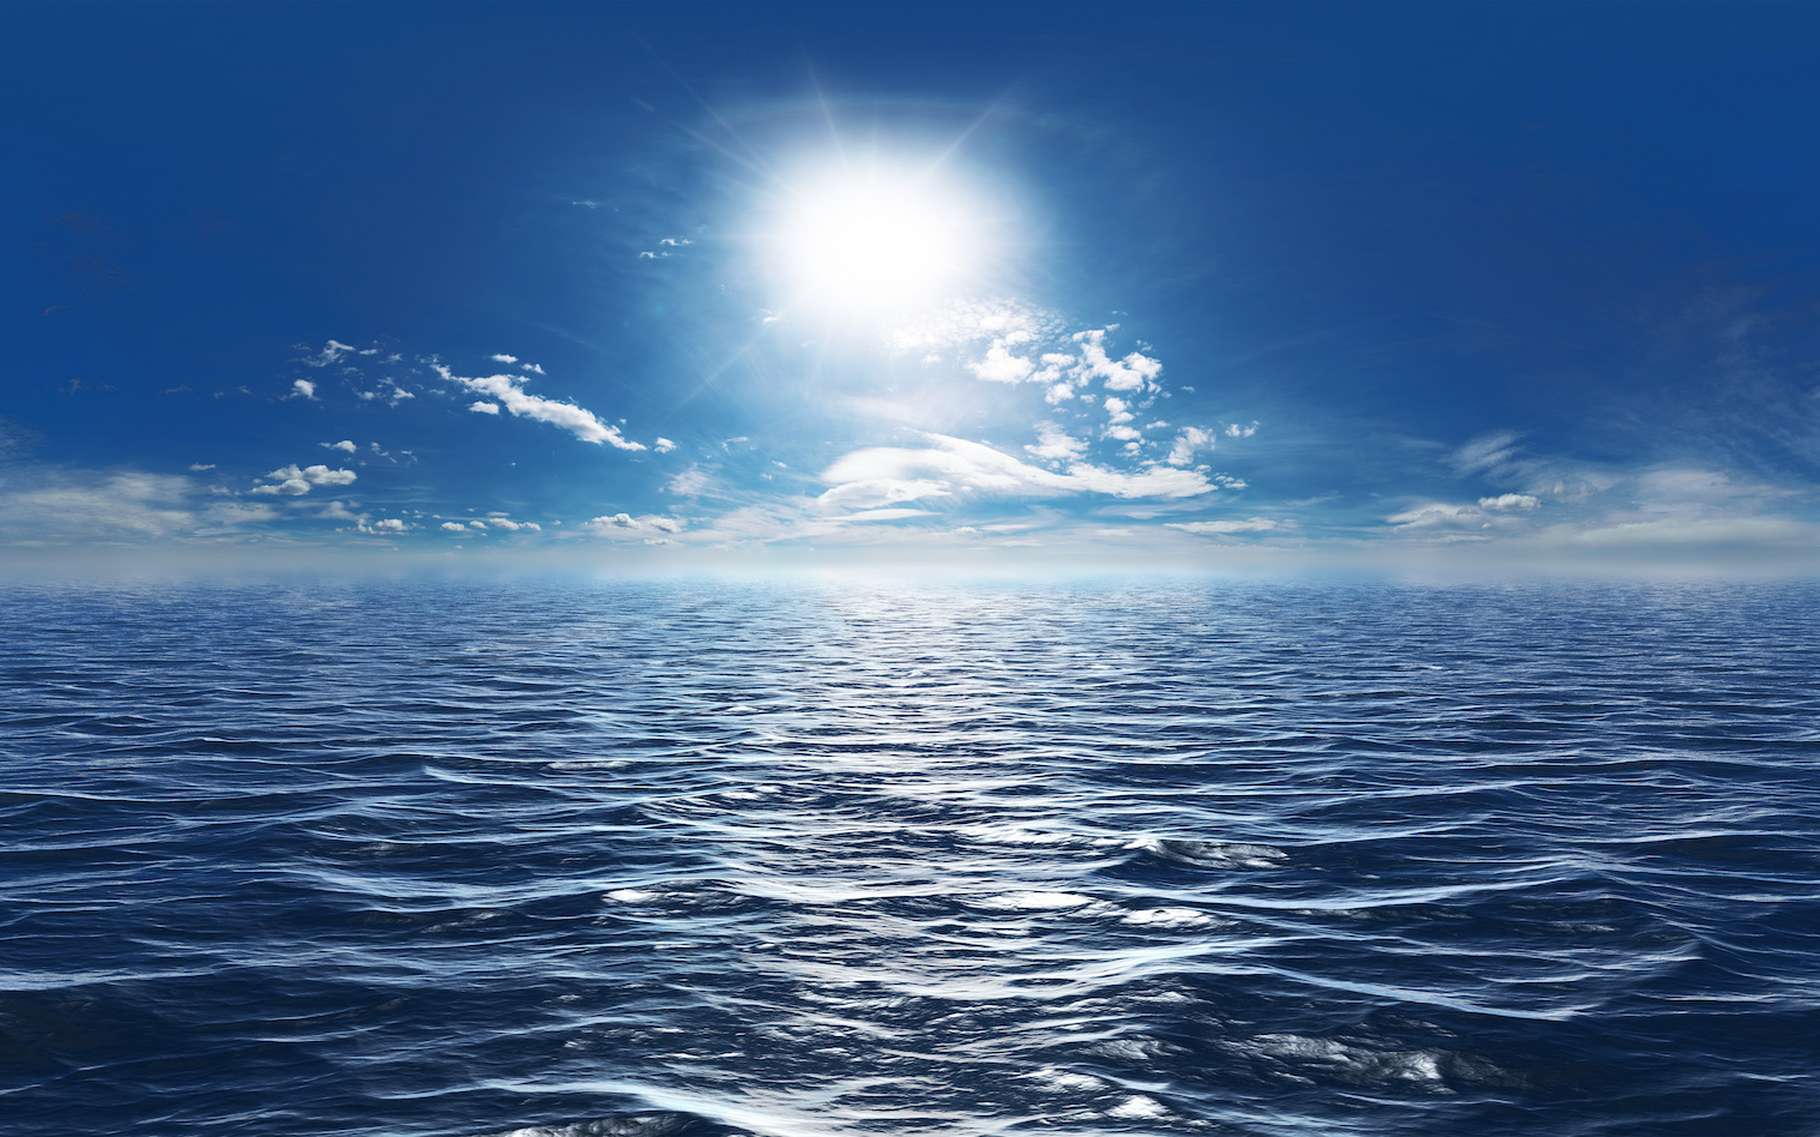 Le réchauffement climatique impacte fortement les océans. © Mathias Weil, Adobe Stock